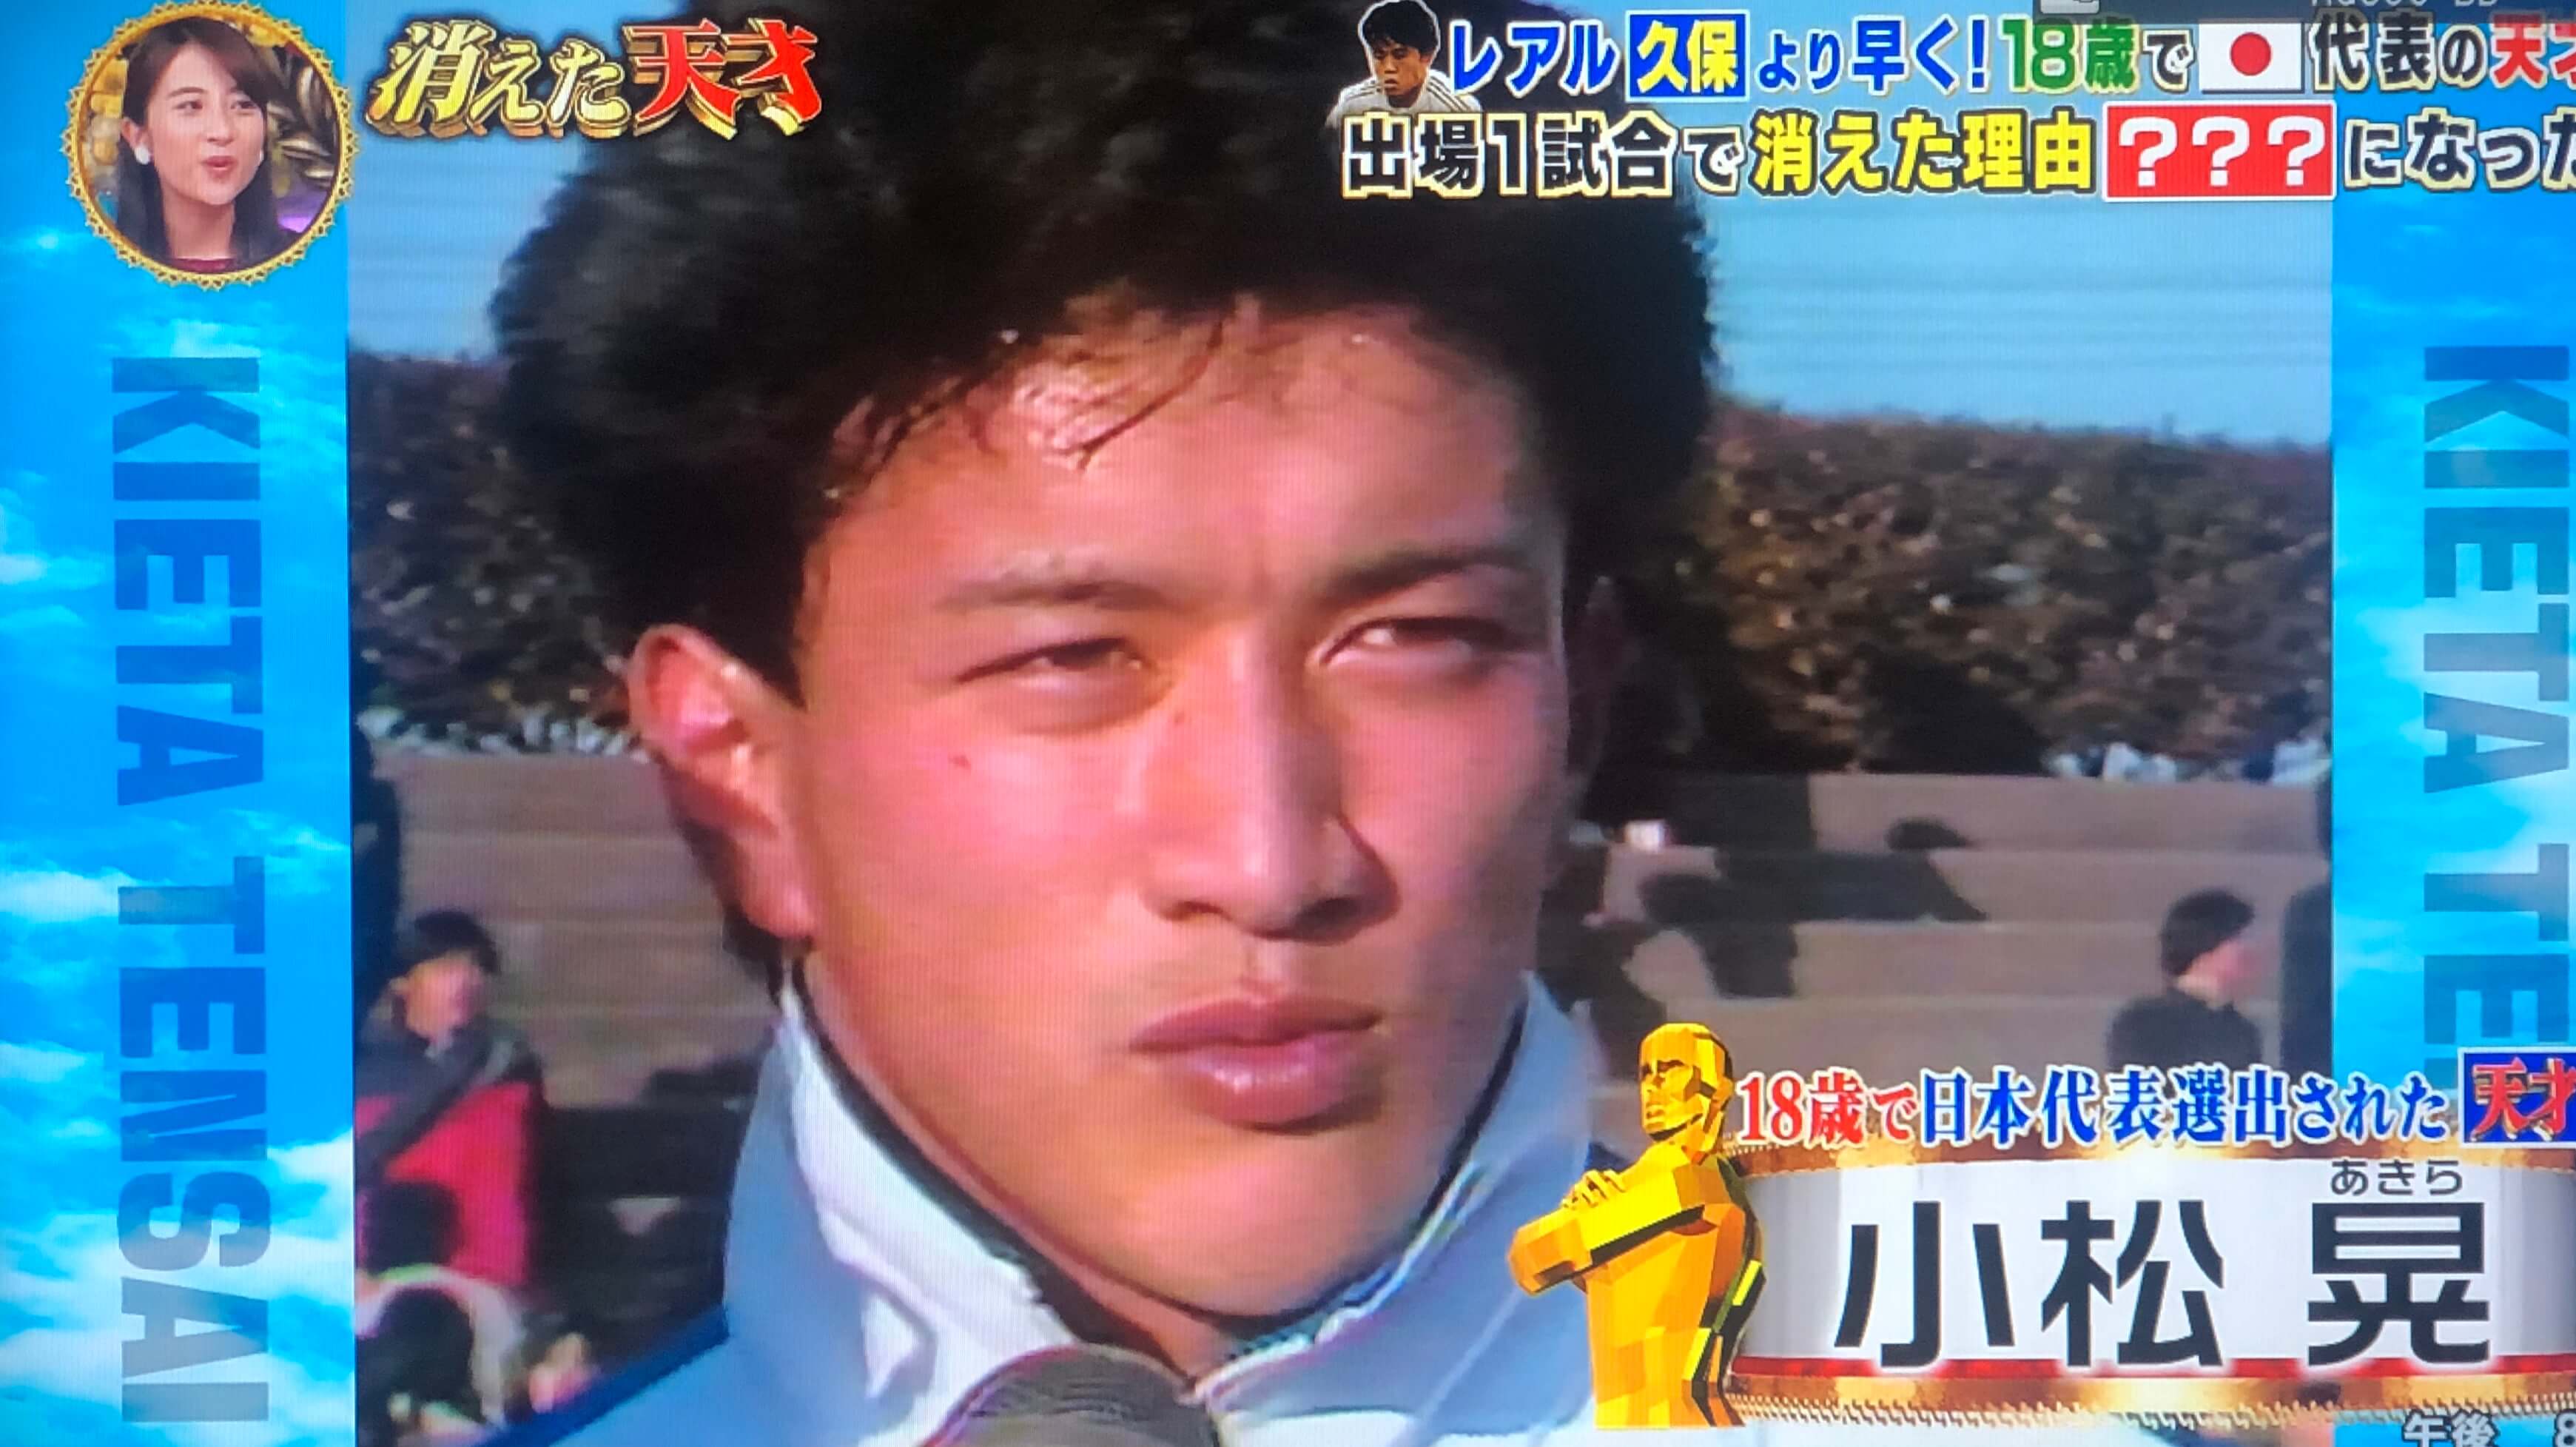 小松晃の現在の顔画像やサッカー監督 消えた理由やwiki経歴は 消えた天才